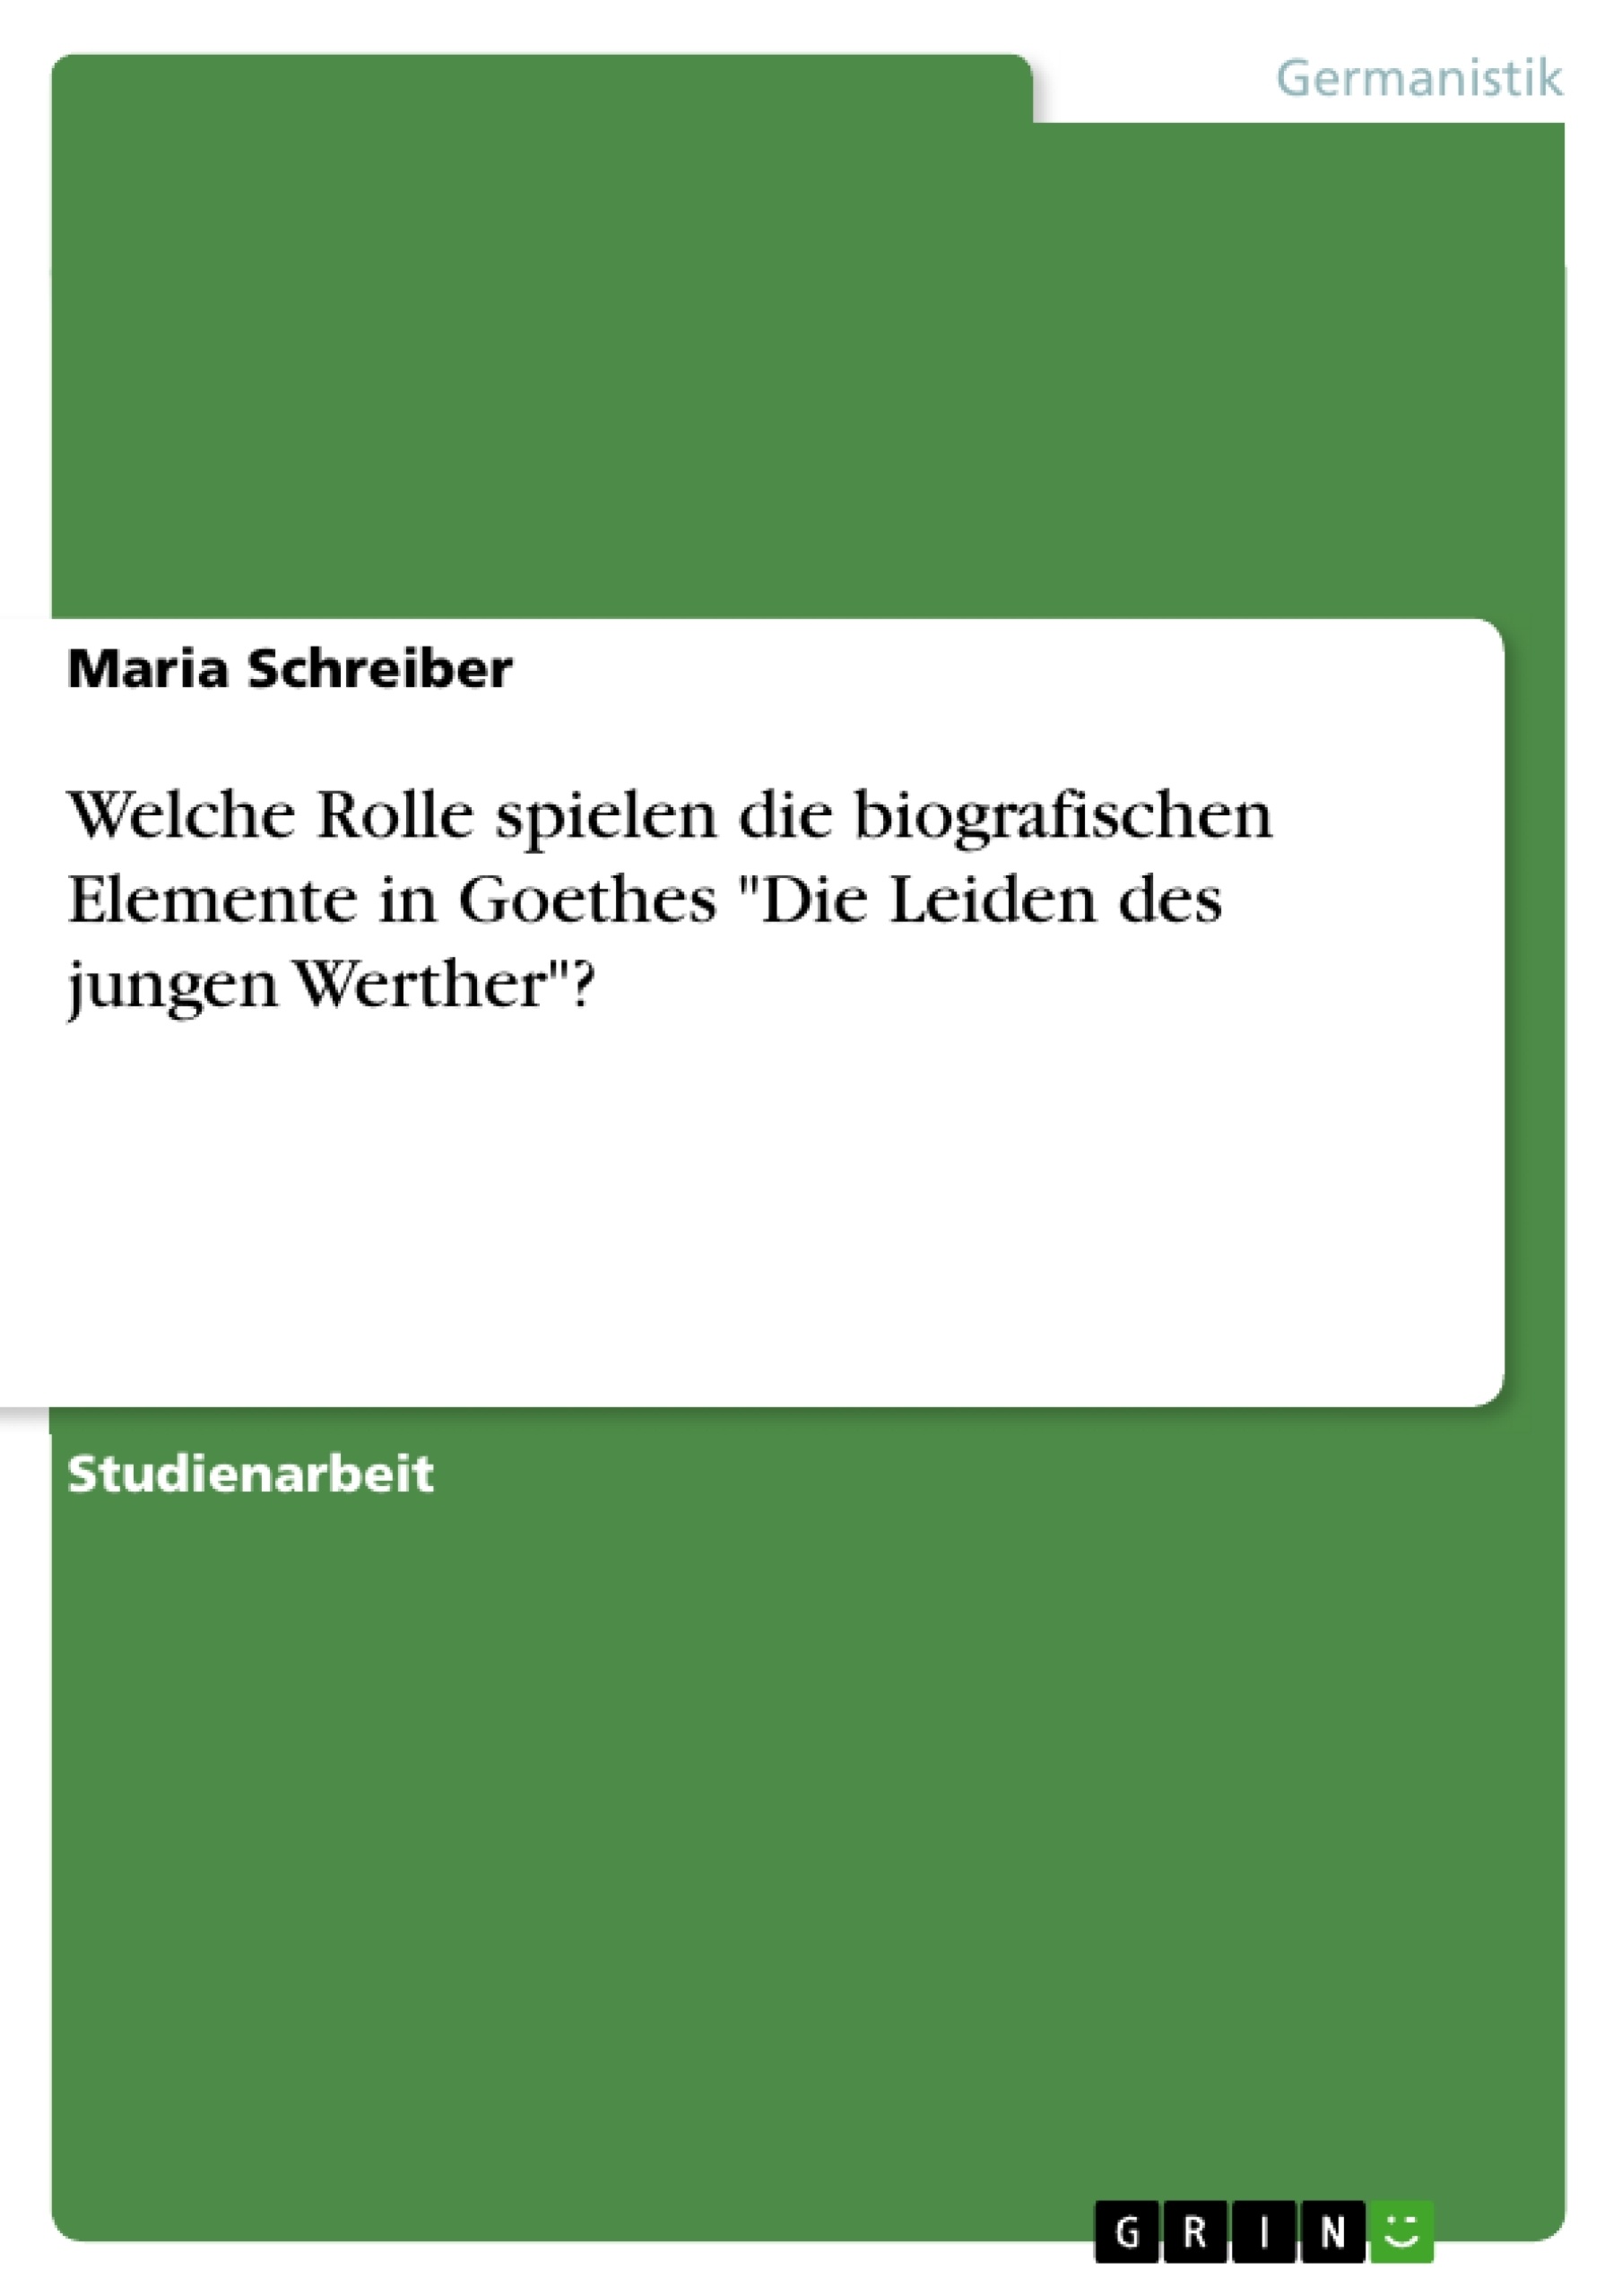 Title: Welche Rolle spielen die biografischen Elemente in Goethes "Die Leiden des jungen Werther"?